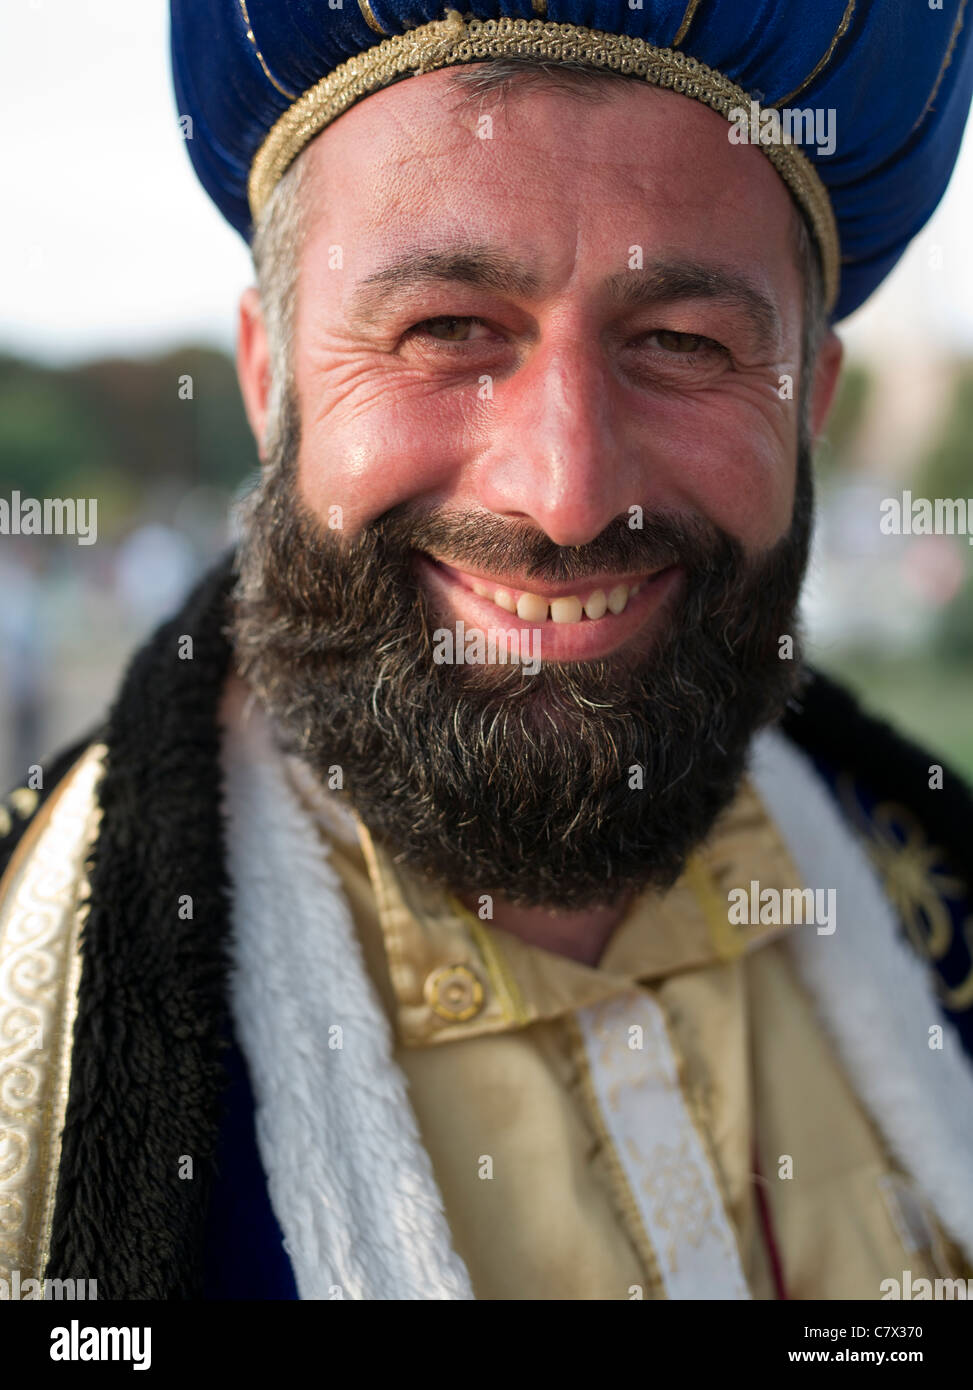 Heureux homme turc vêtu comme un sultan se tient devant la Mosquée Bleue à Istanbul Turquie Banque D'Images